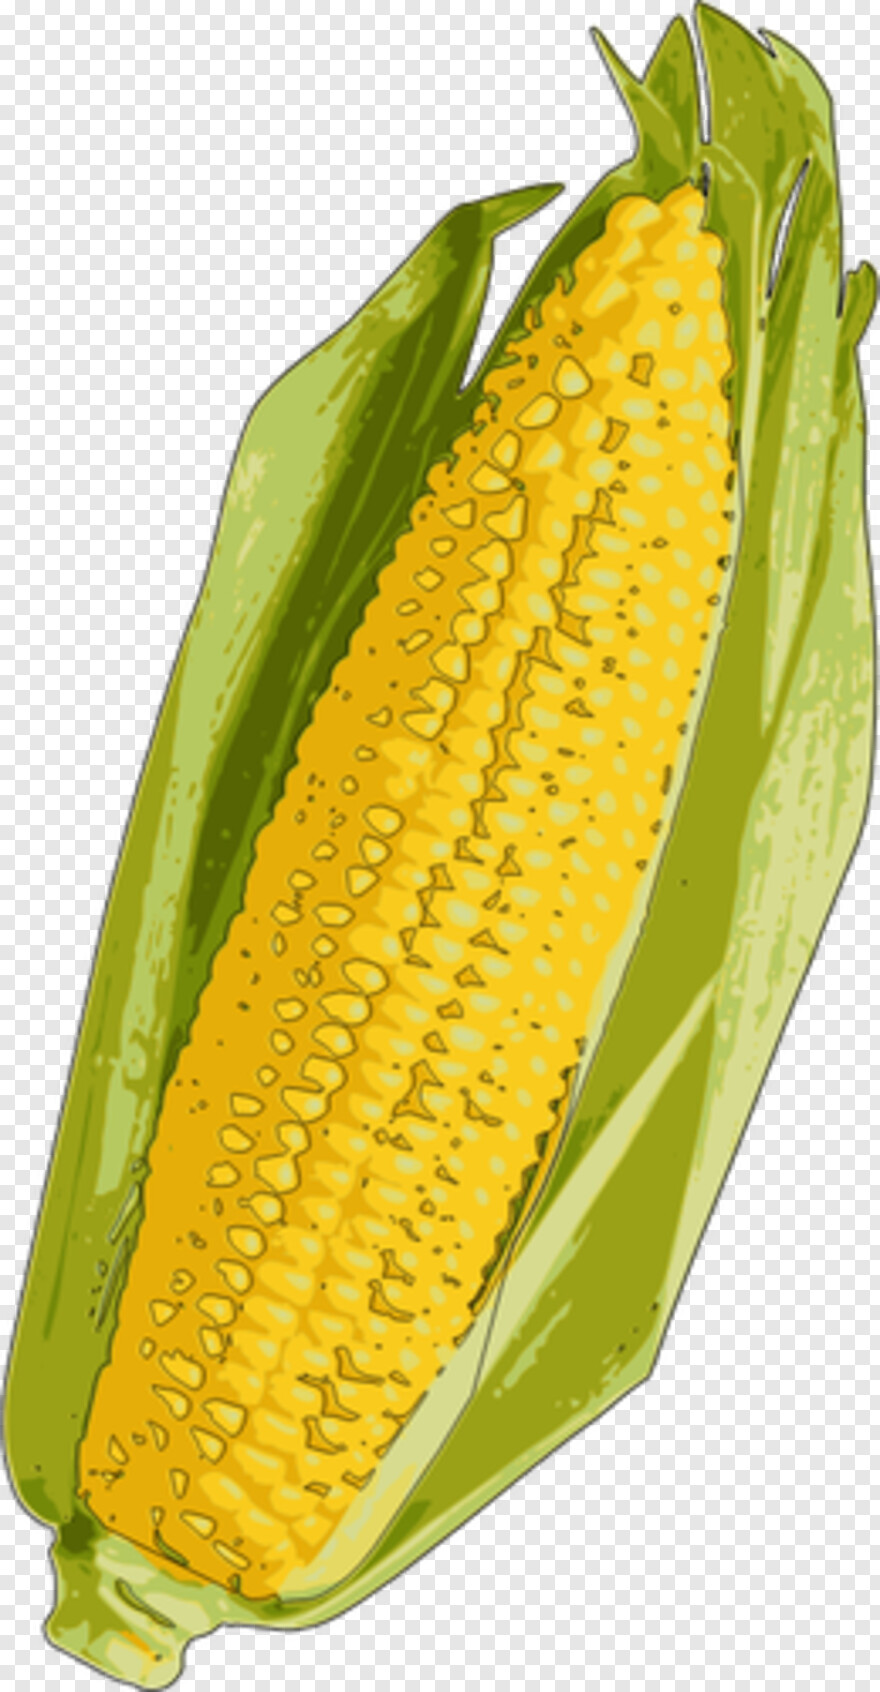 candy-corn # 956529